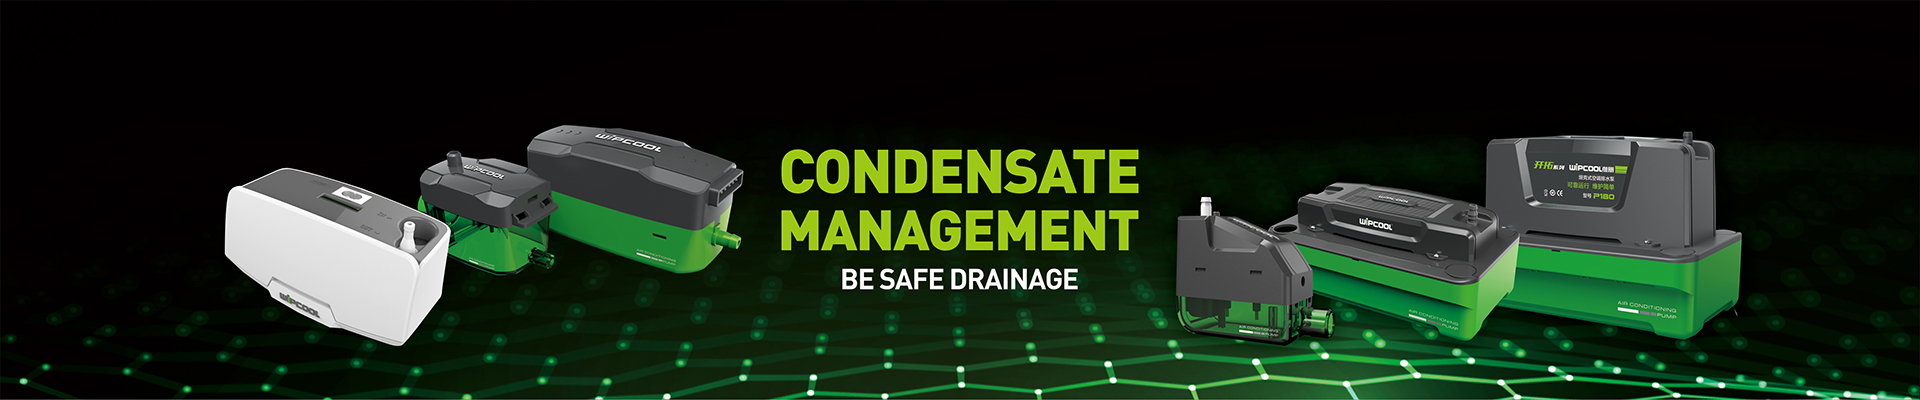 Condensate Management